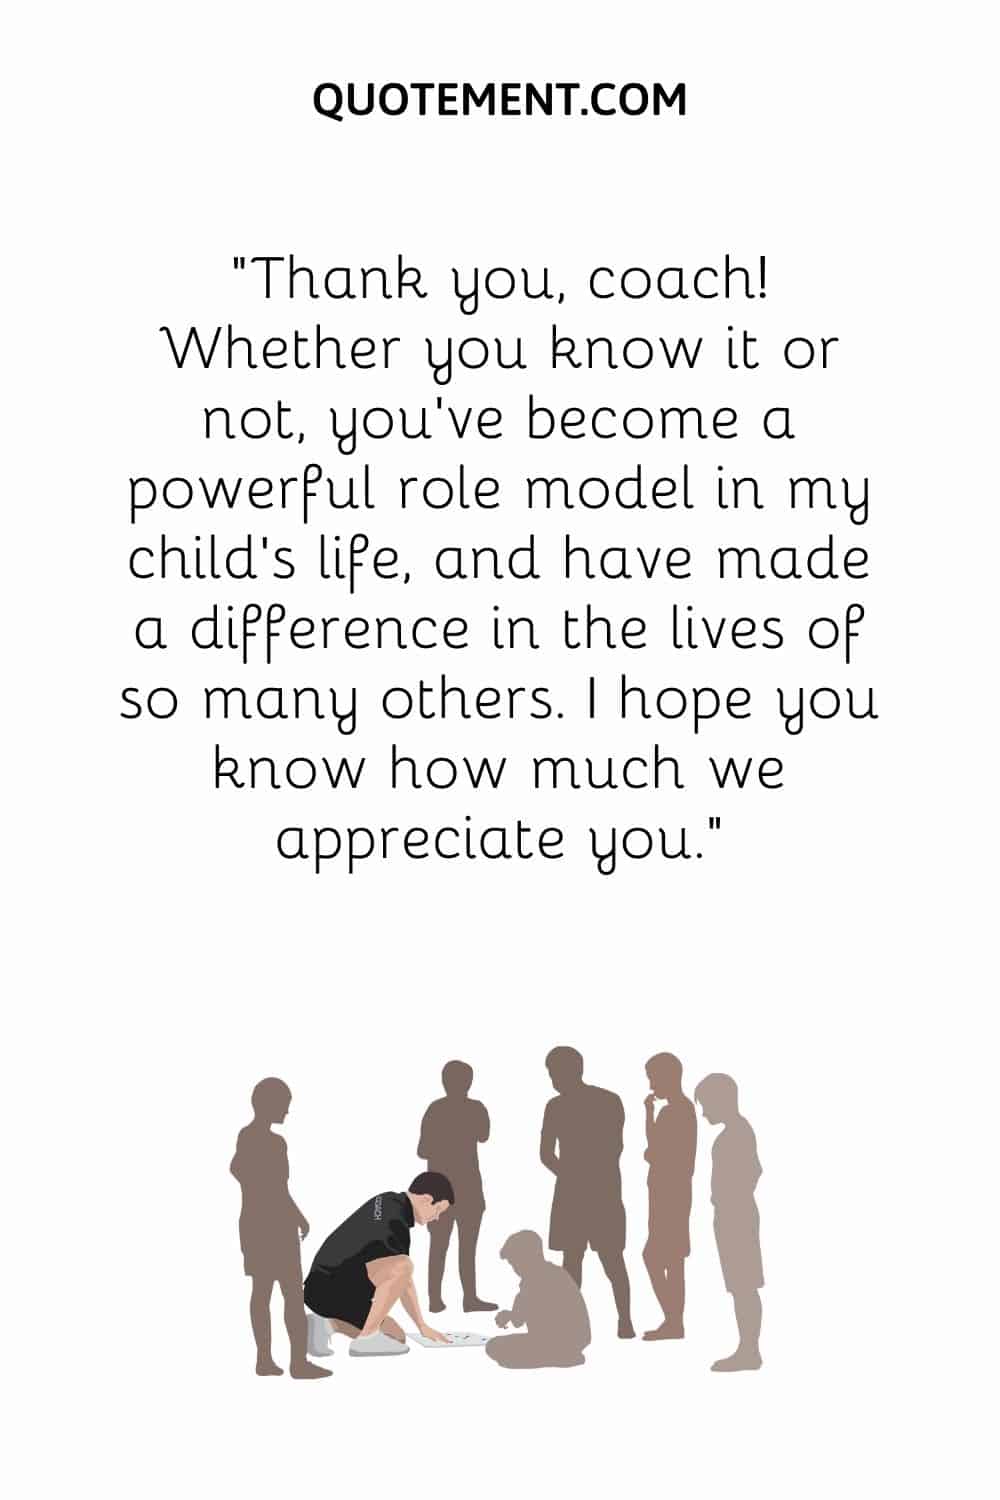 Thank you, coach